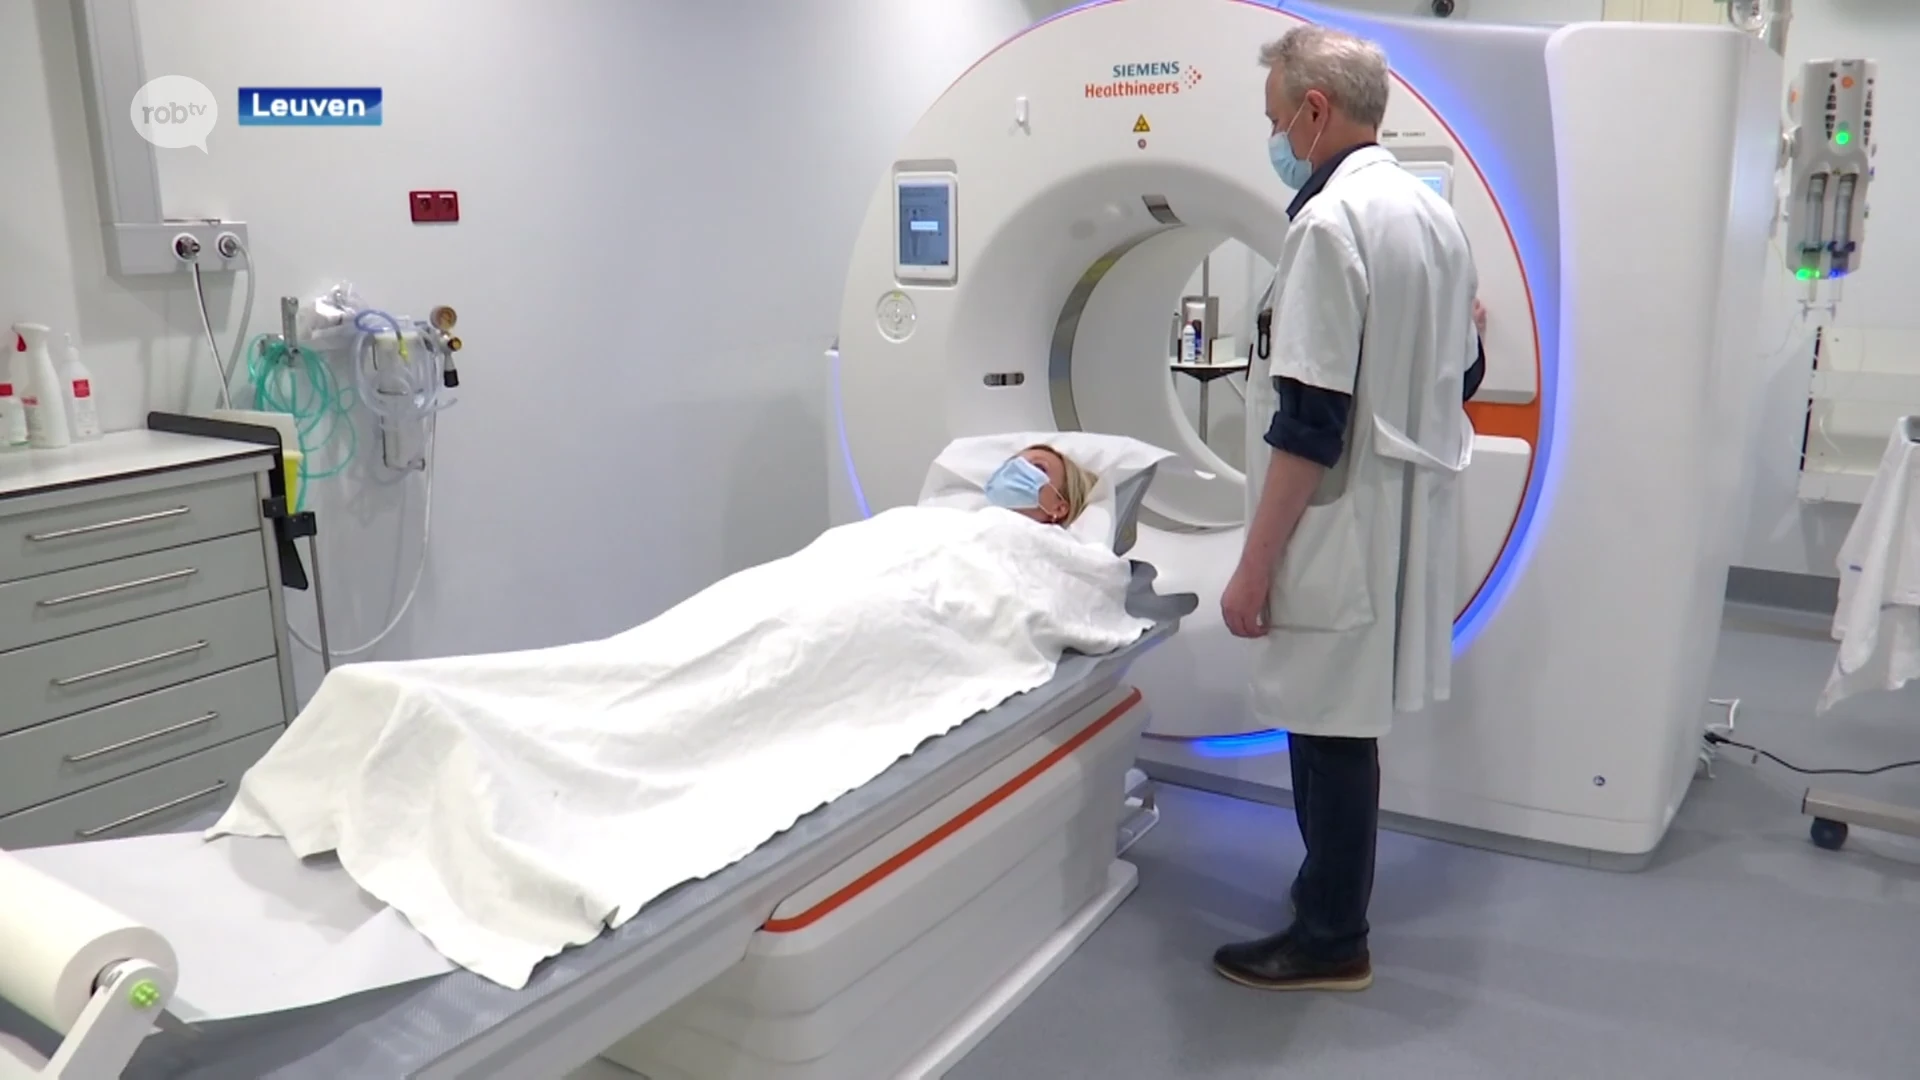 Gloednieuwe CT-scanner in UZ Leuven: slechts 25 exemplaren over hele wereld